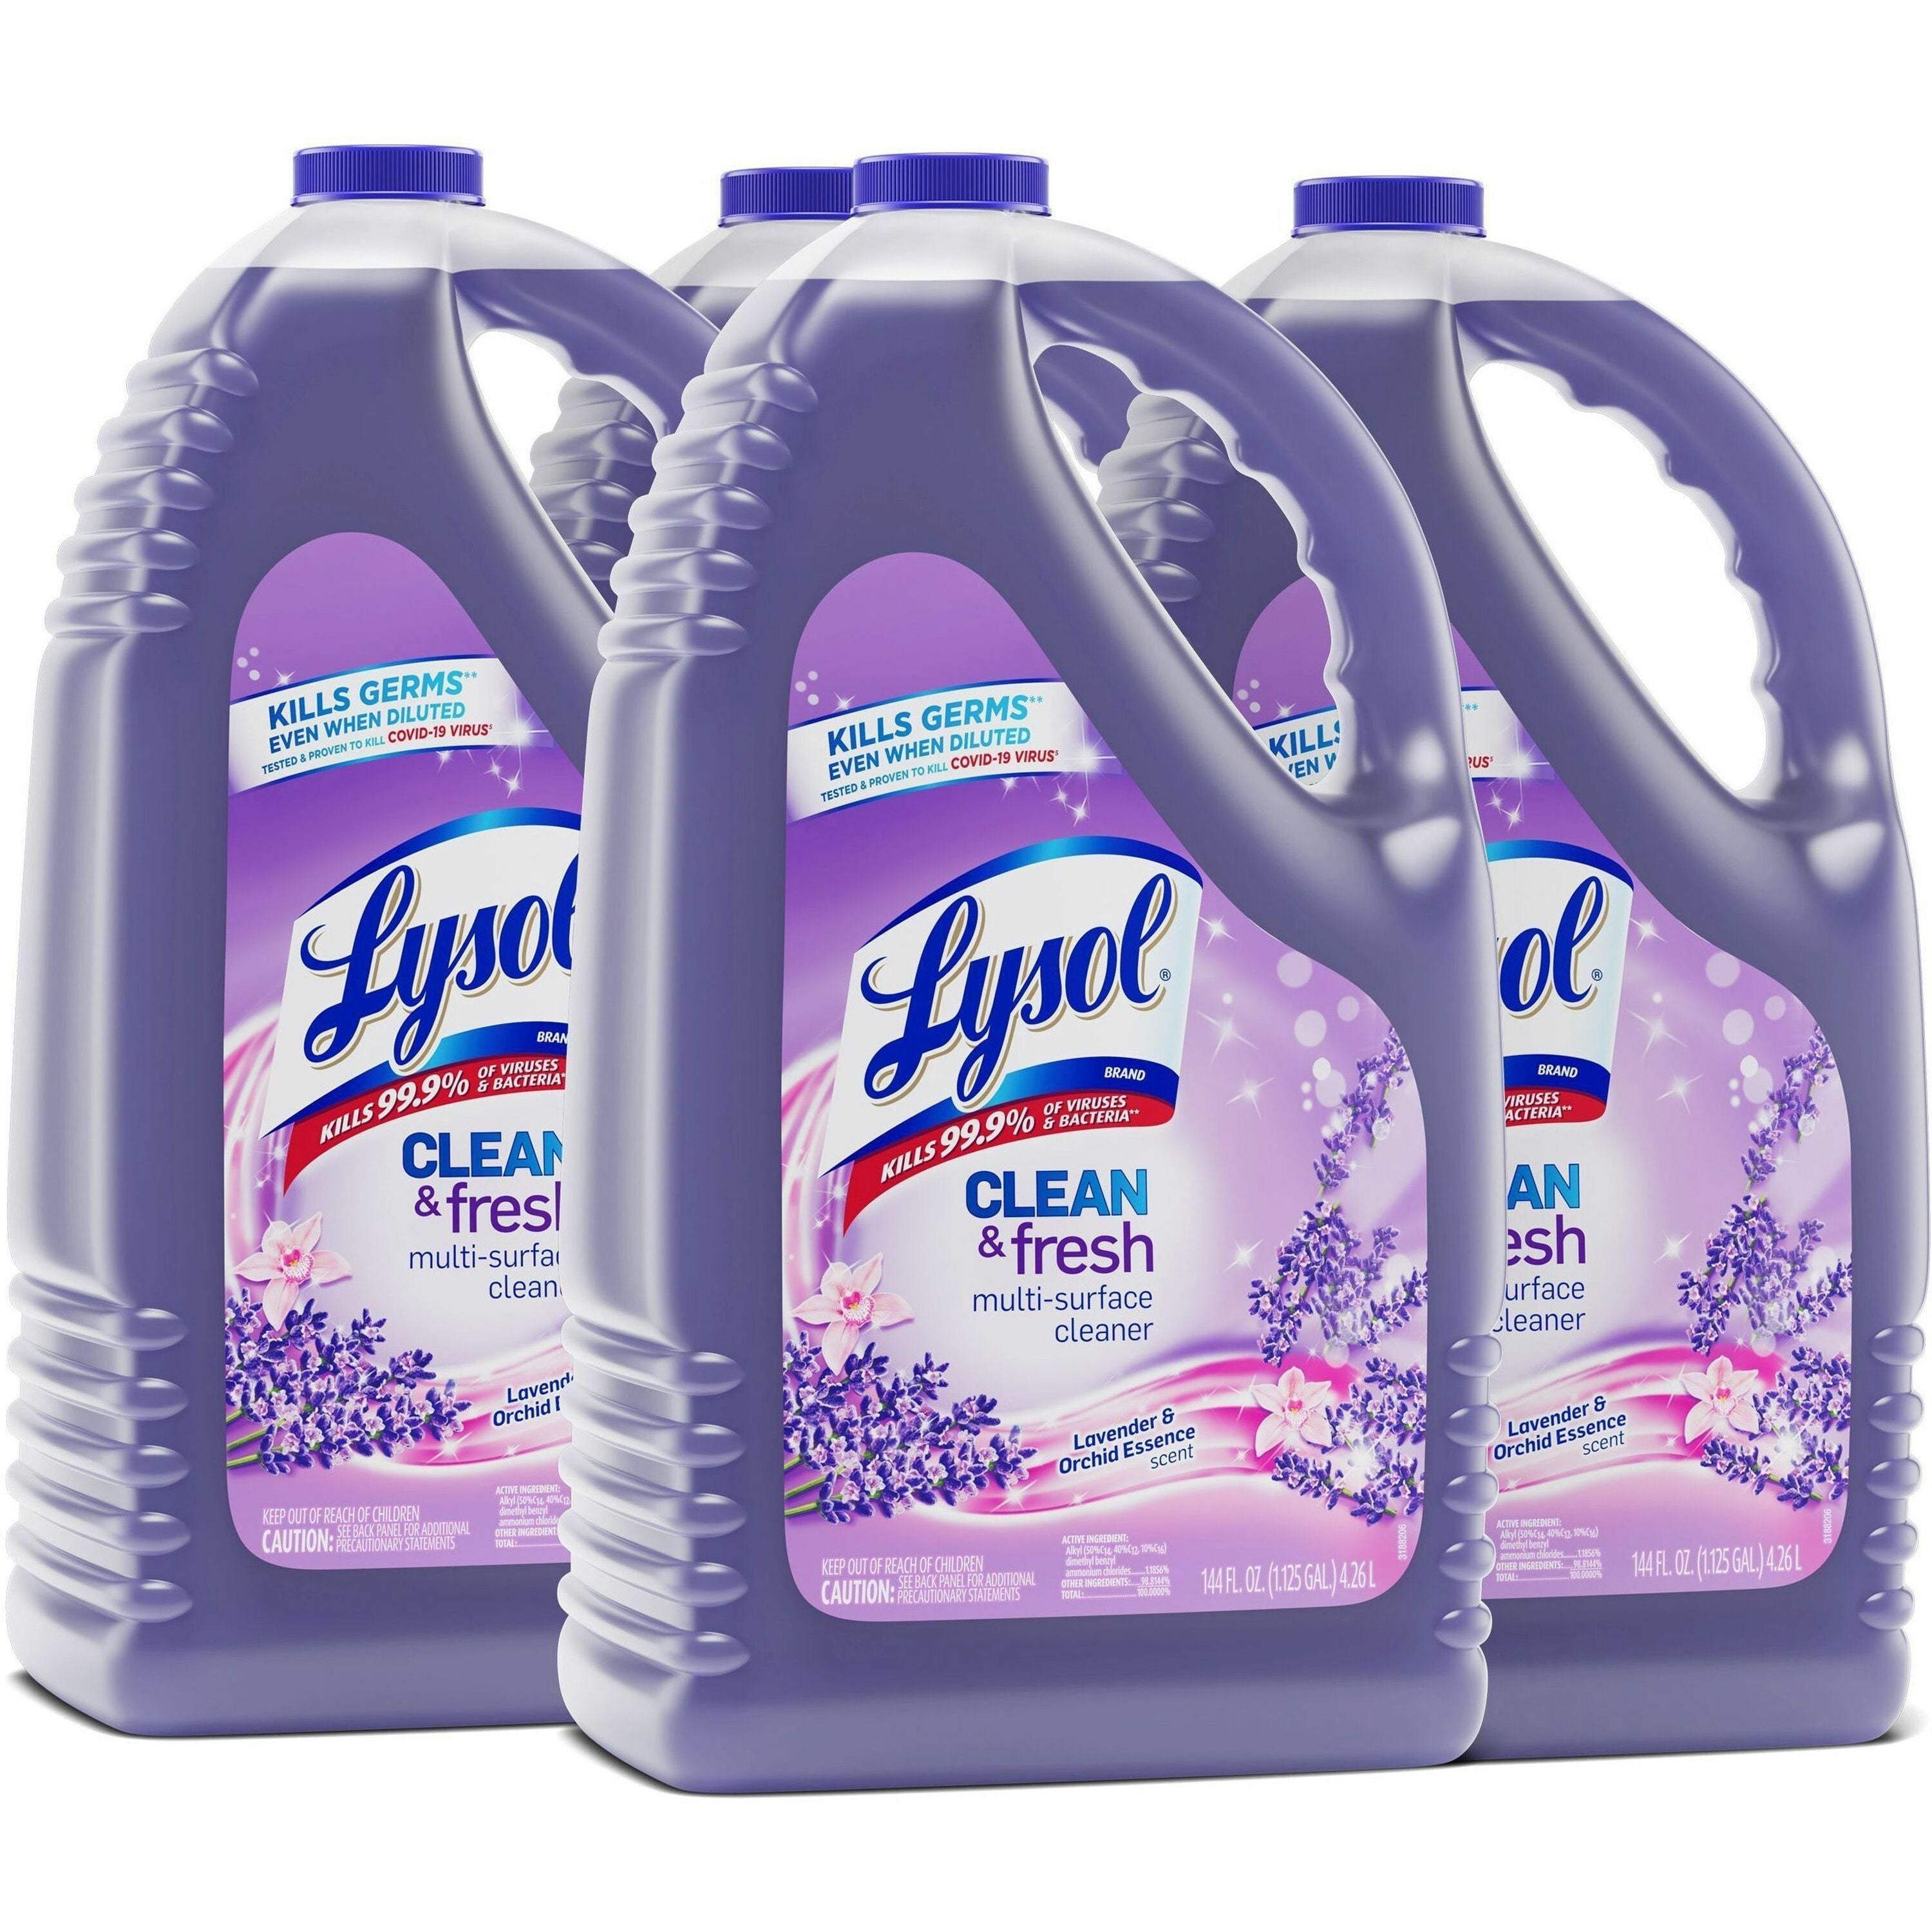 lysol-clean-fresh-lavender-cleaner-for-multi-surface-144-fl-oz-45-quart-clean-&-fresh-lavender-orchid-scent-4-carton-long-lasting-disinfectant-purple_rac88786ct - 1